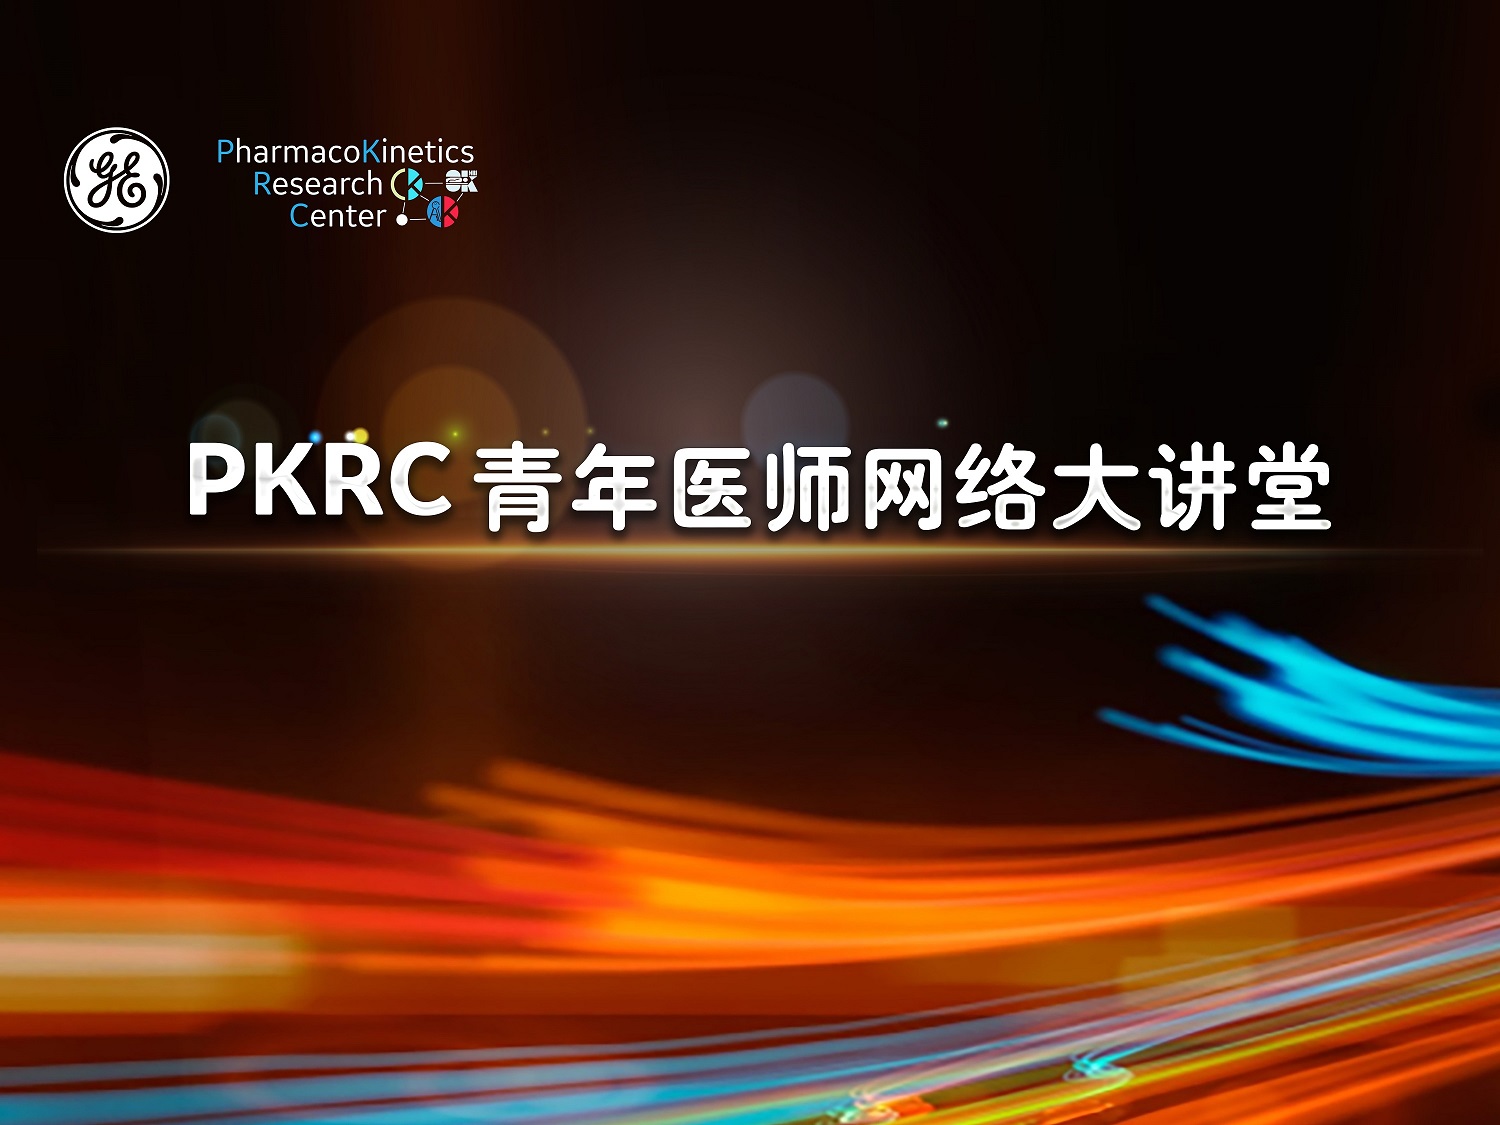 PKRC青年医师网络大讲堂：基于脑血管疾病微循环环境的常规影像学灌注研究--陈伟建教授